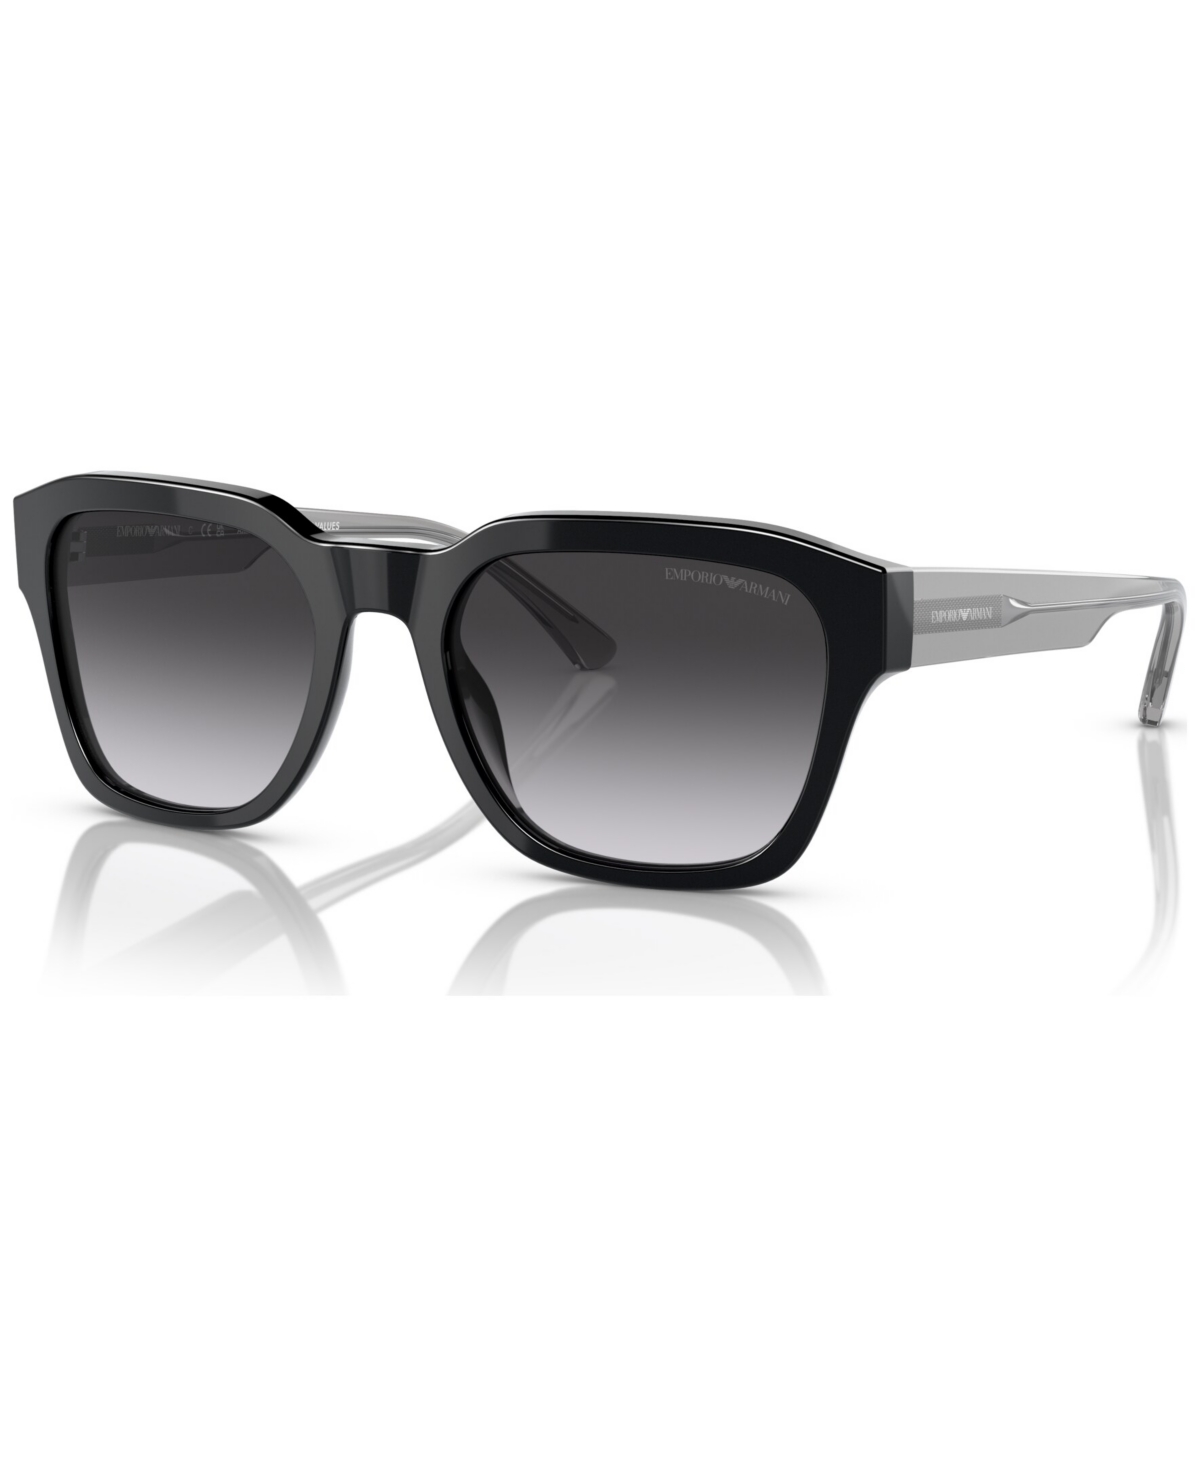 Emporio Armani Men's Sunglasses, Gradient Ea4175 In Matte Black